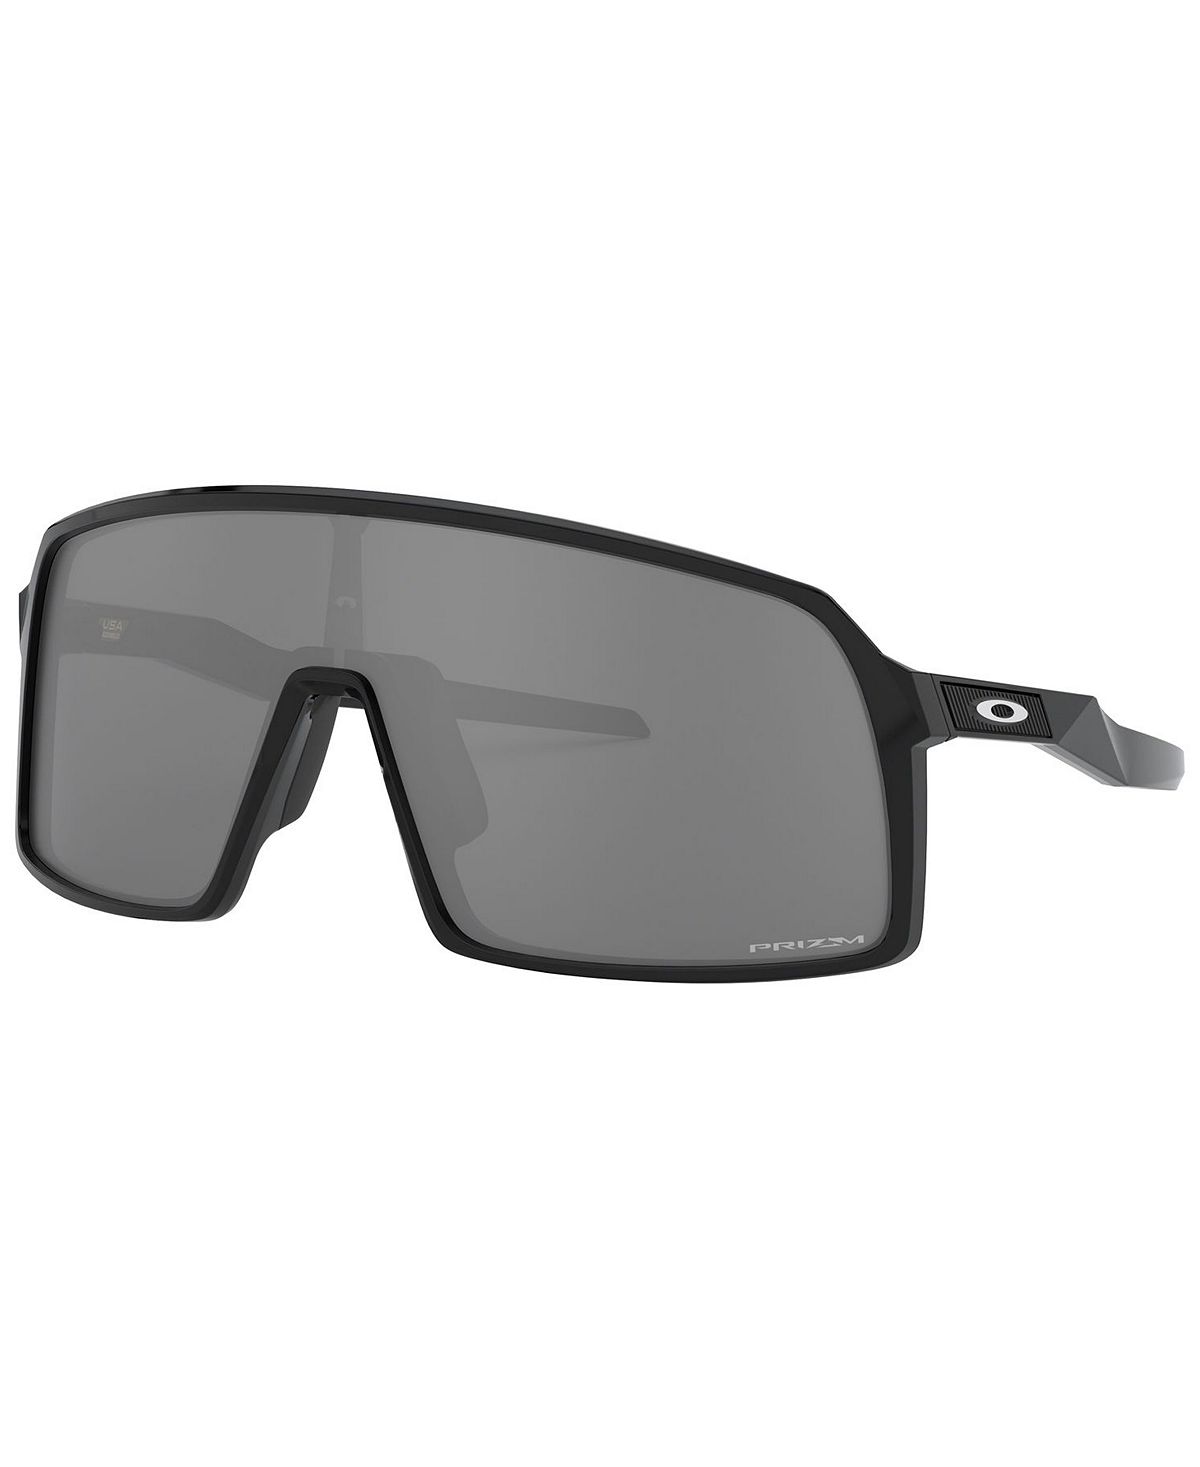 Солнцезащитные очки, OO9406 Sutro Oakley мужские солнцезащитные очки sutro коллекция nfl oo9406 oakley